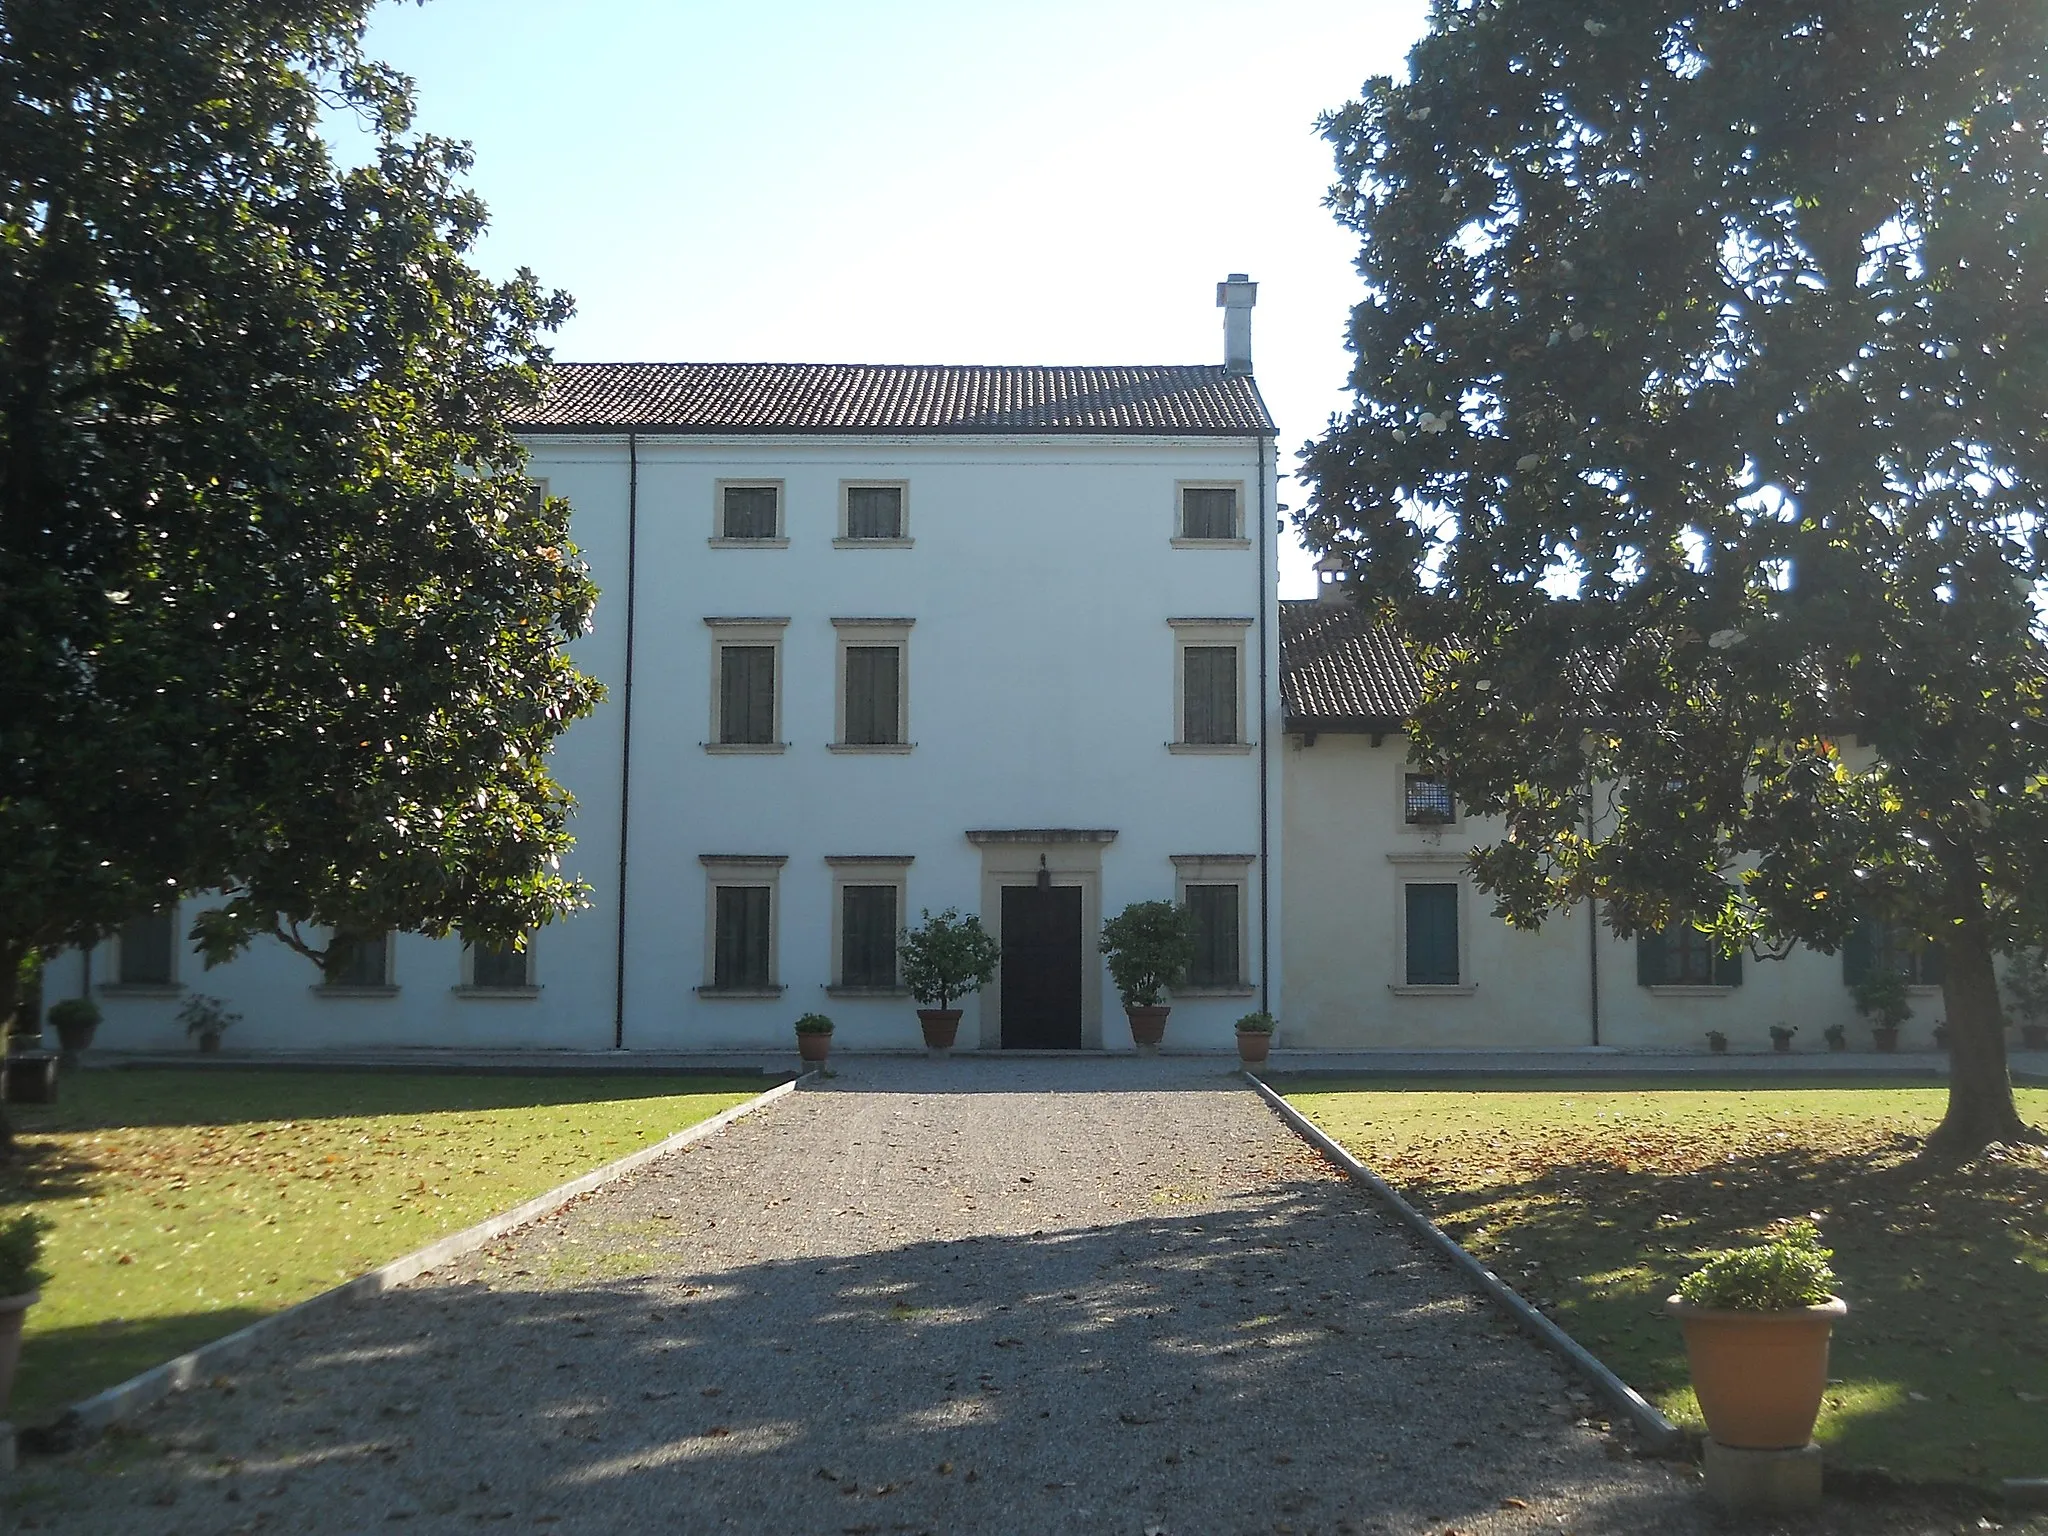 Image de Veneto